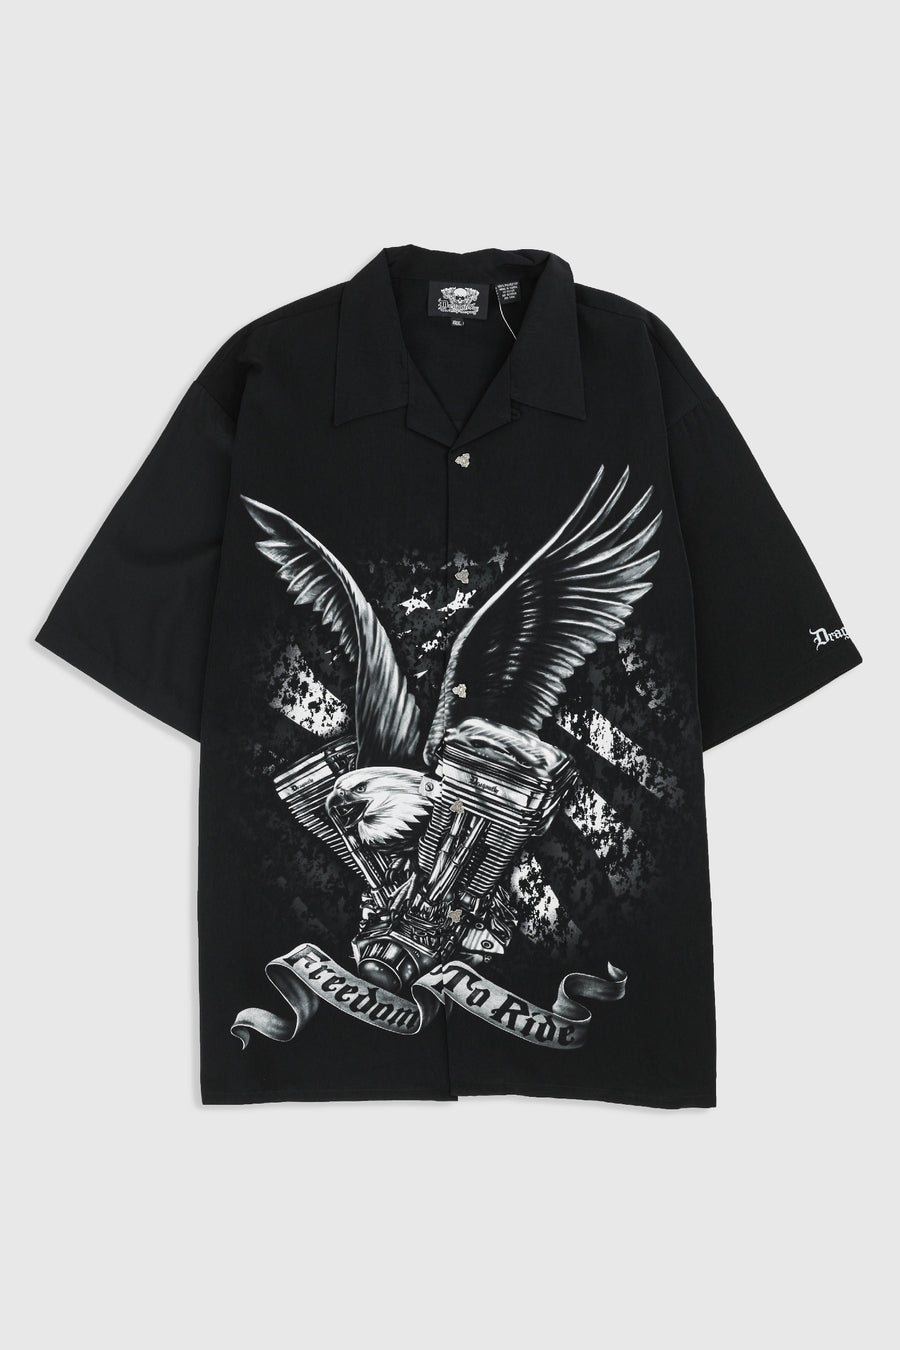 Deadstock Dragonfly Freedom to Ride Camp Shirt - L, XXL, XXXL